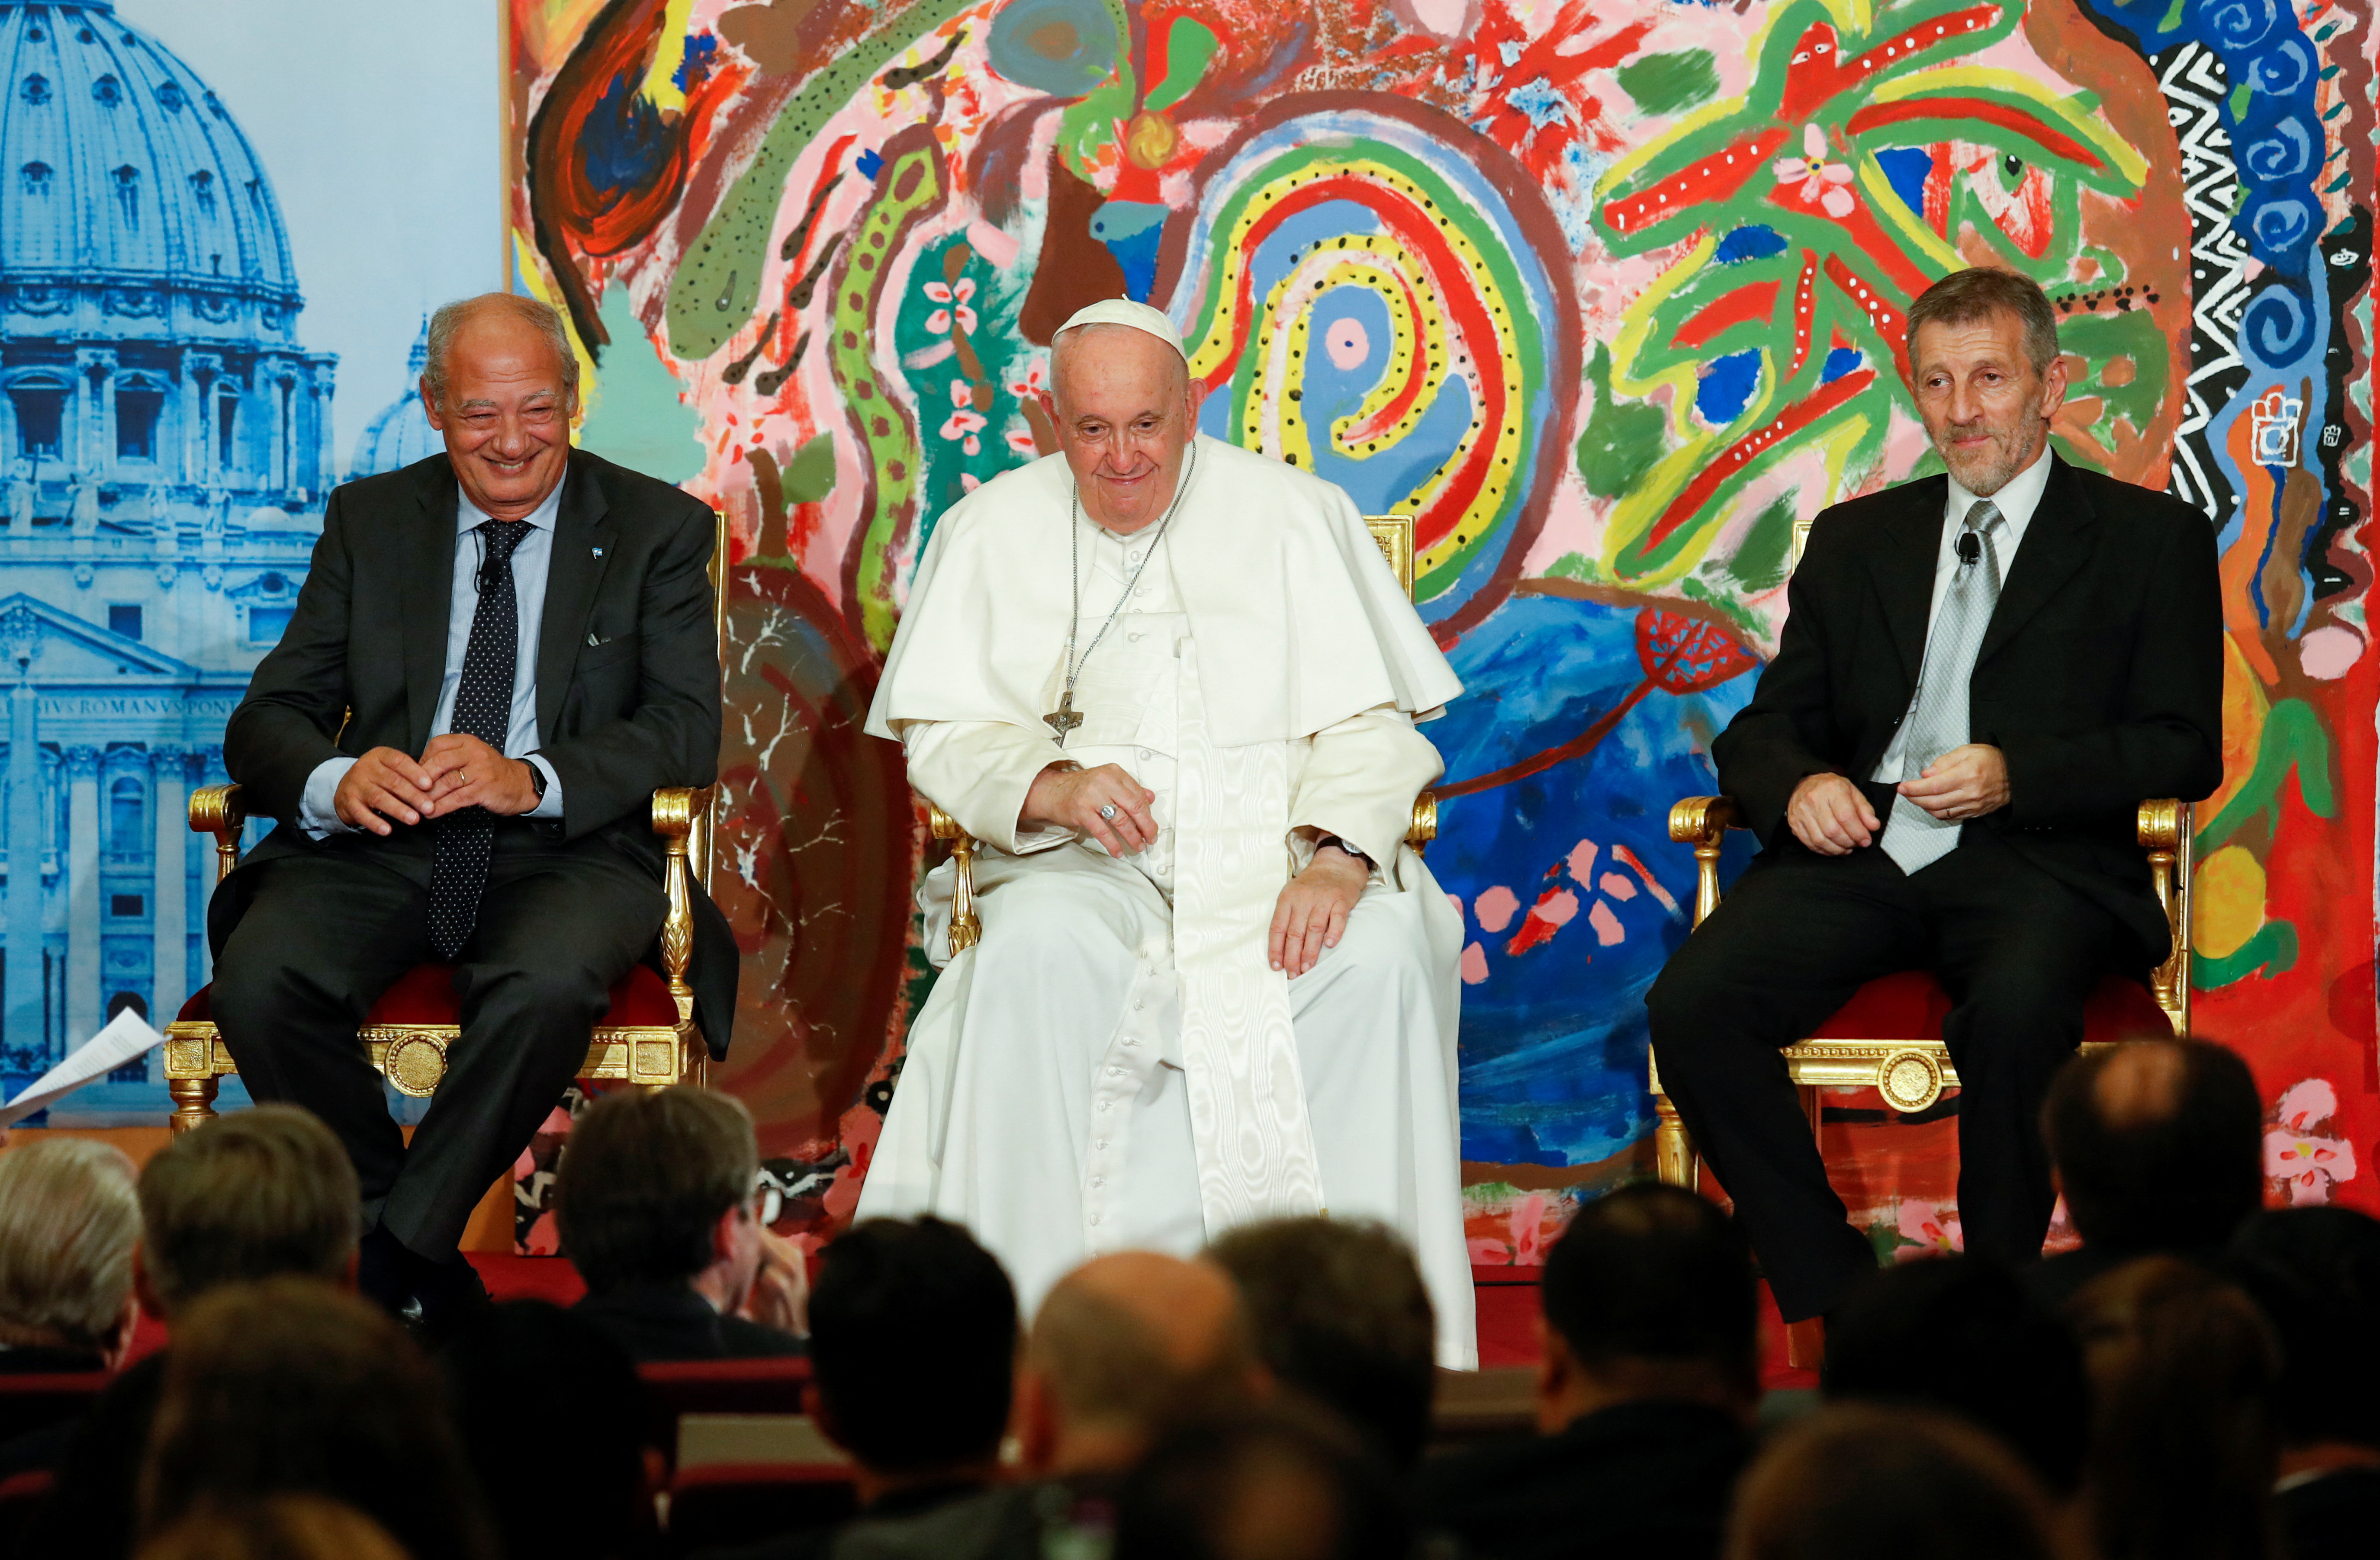 El Papa Francisco confirmó su intención de visitar el año que viene la Argentina: “Vamos a ver si se puede” 